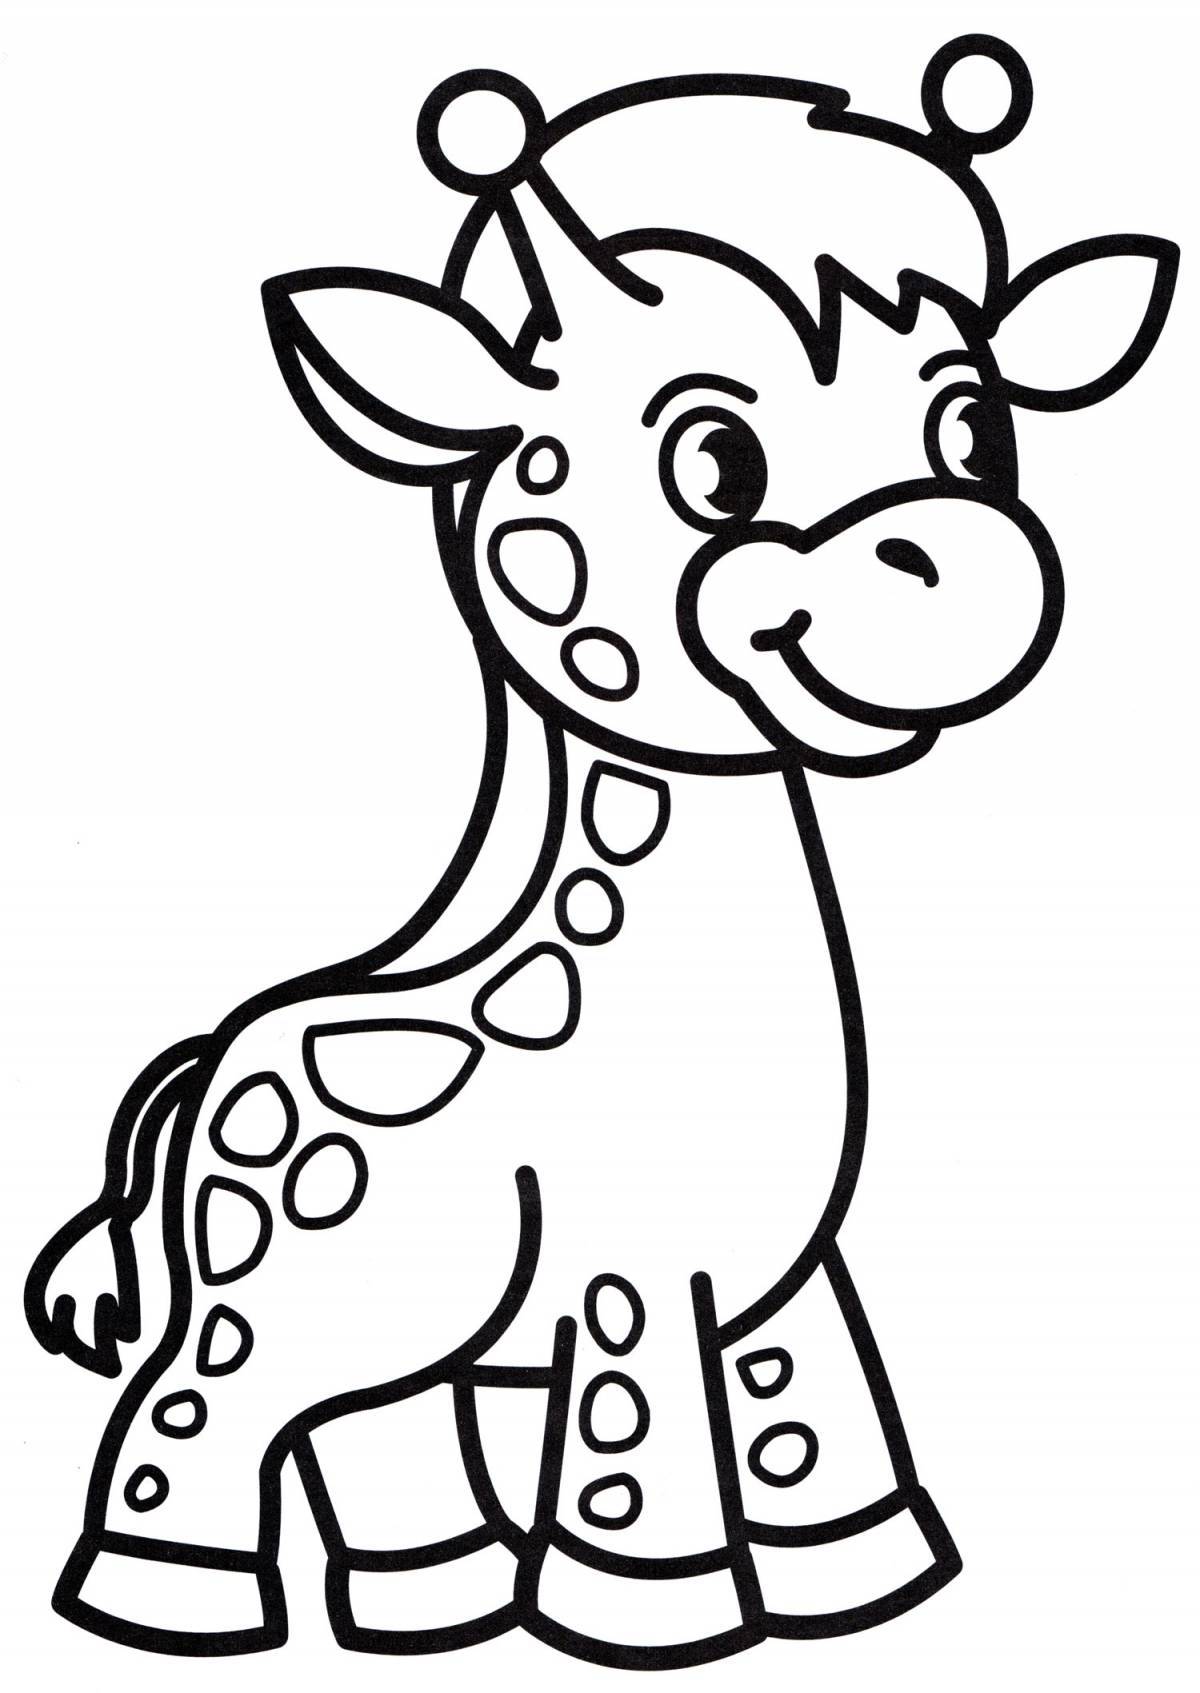 Giraffe for kids #2